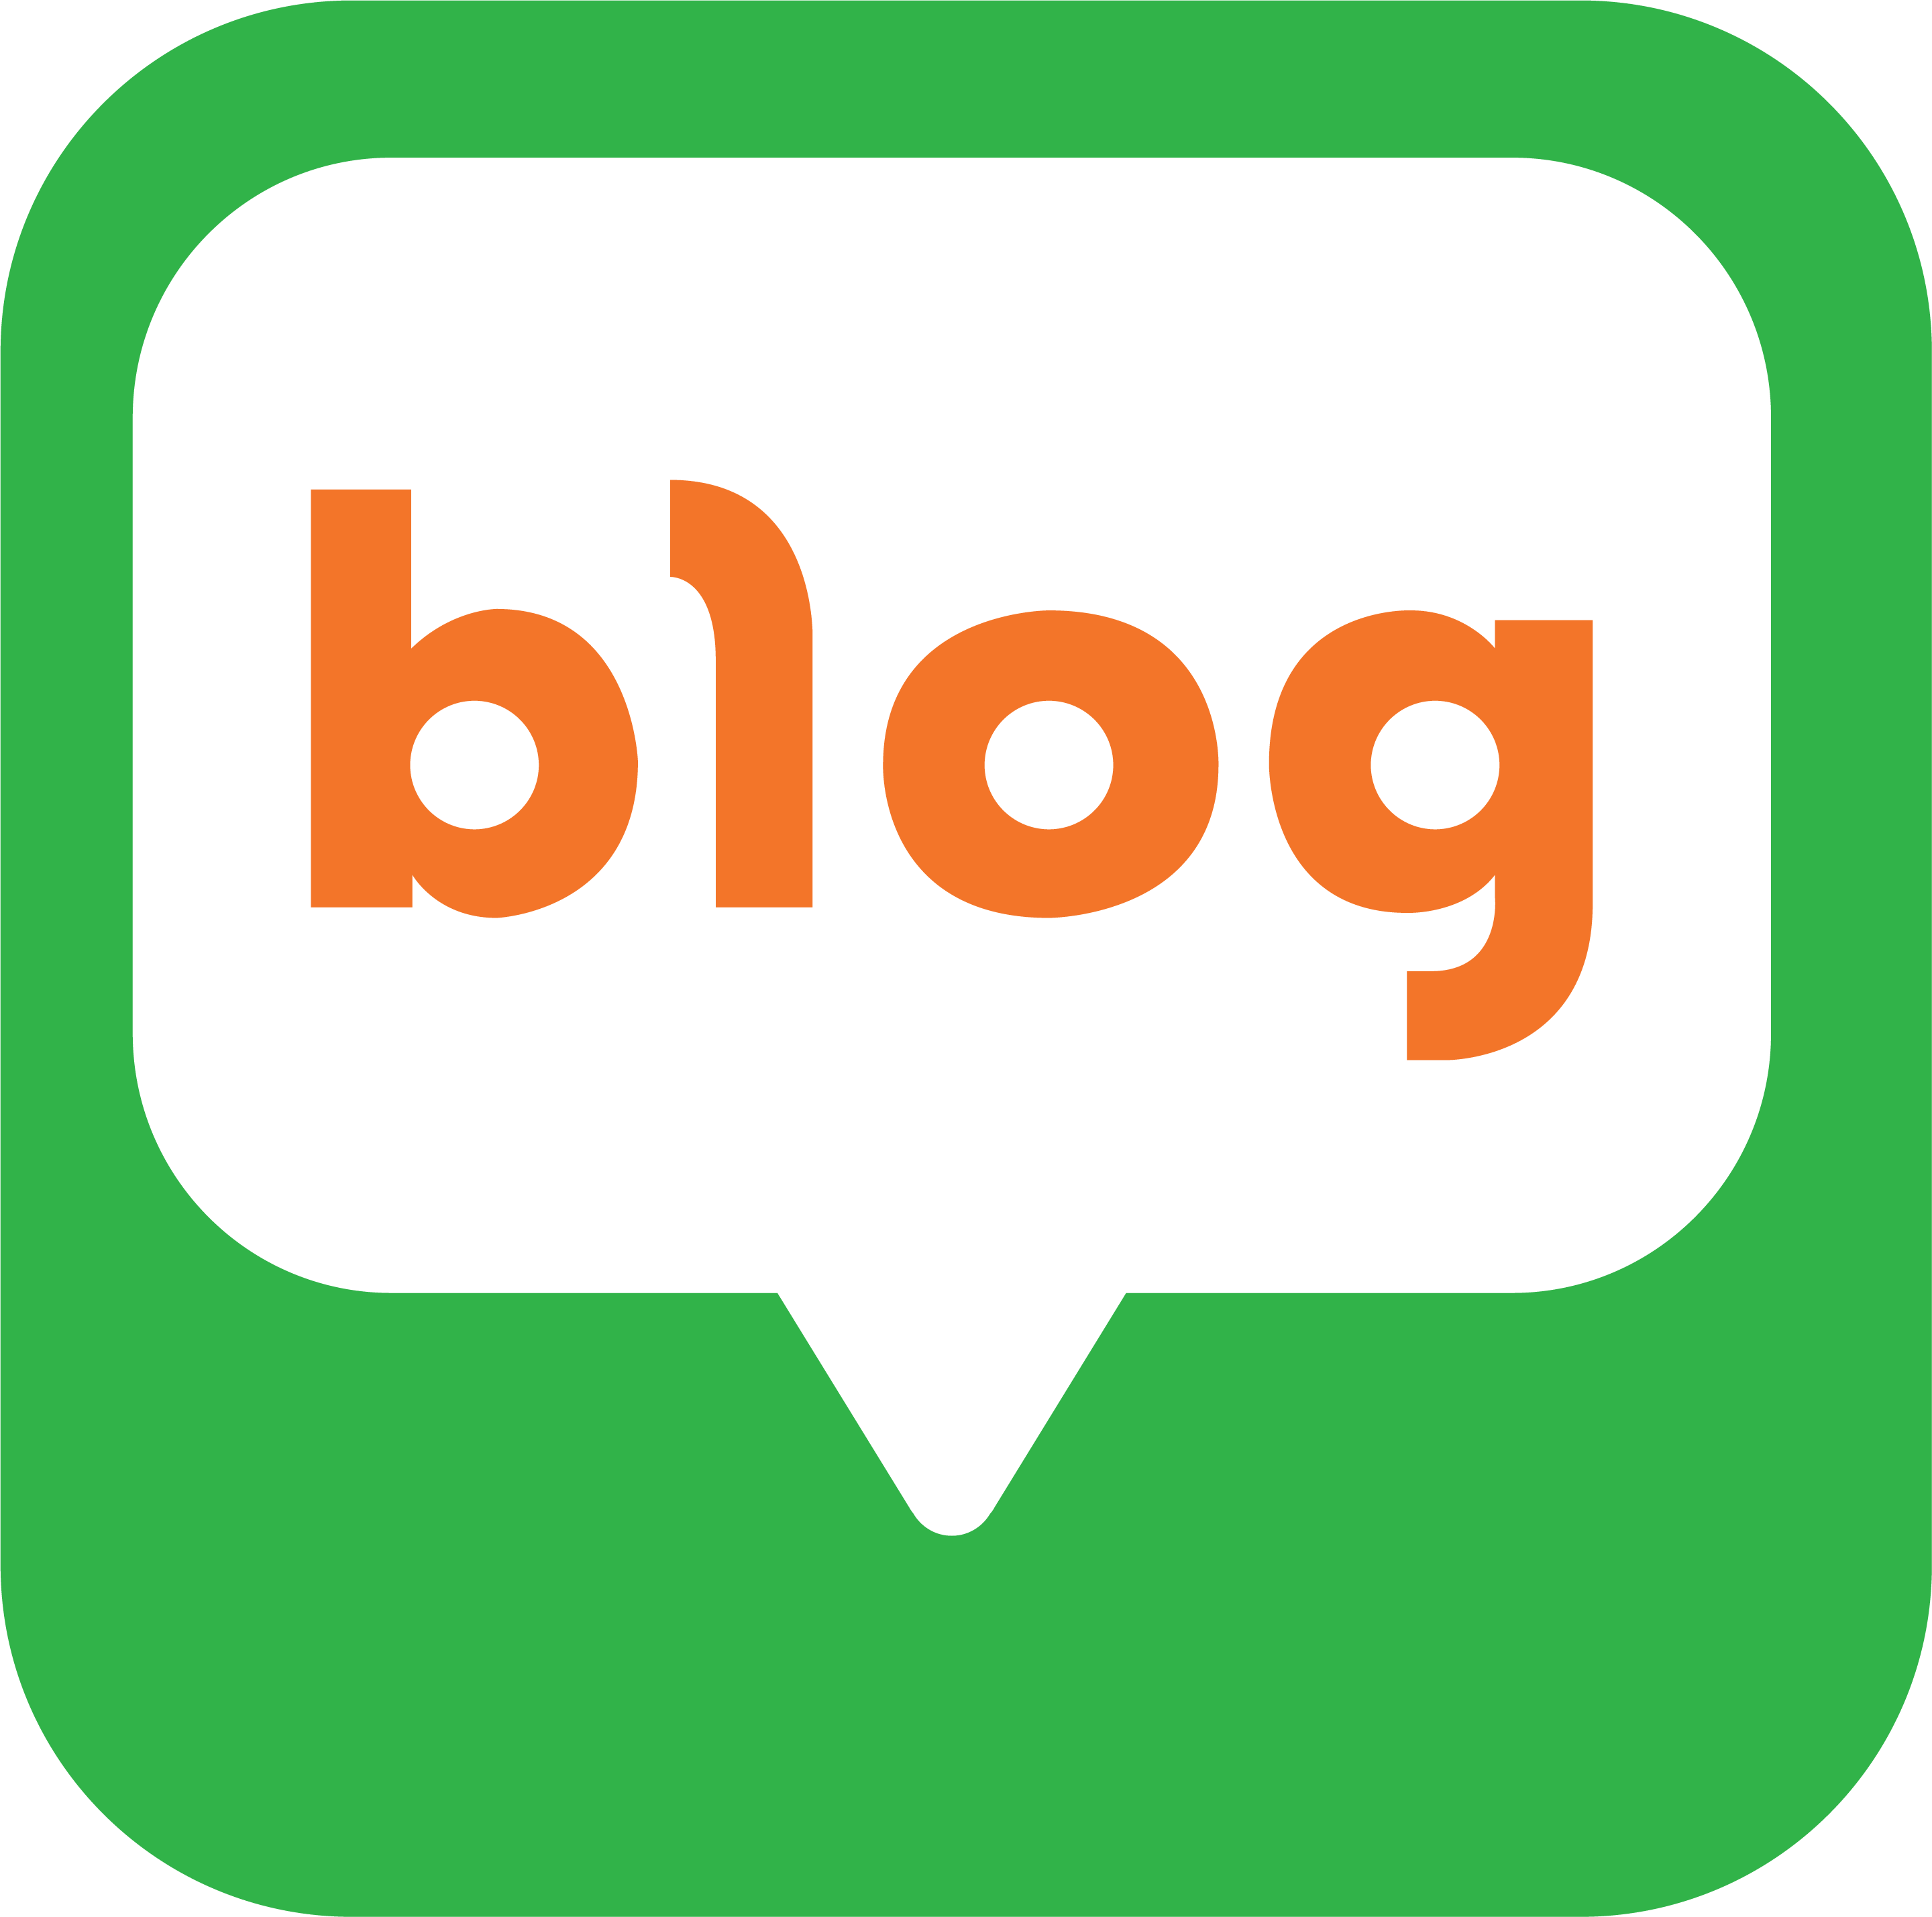 naver blog icon